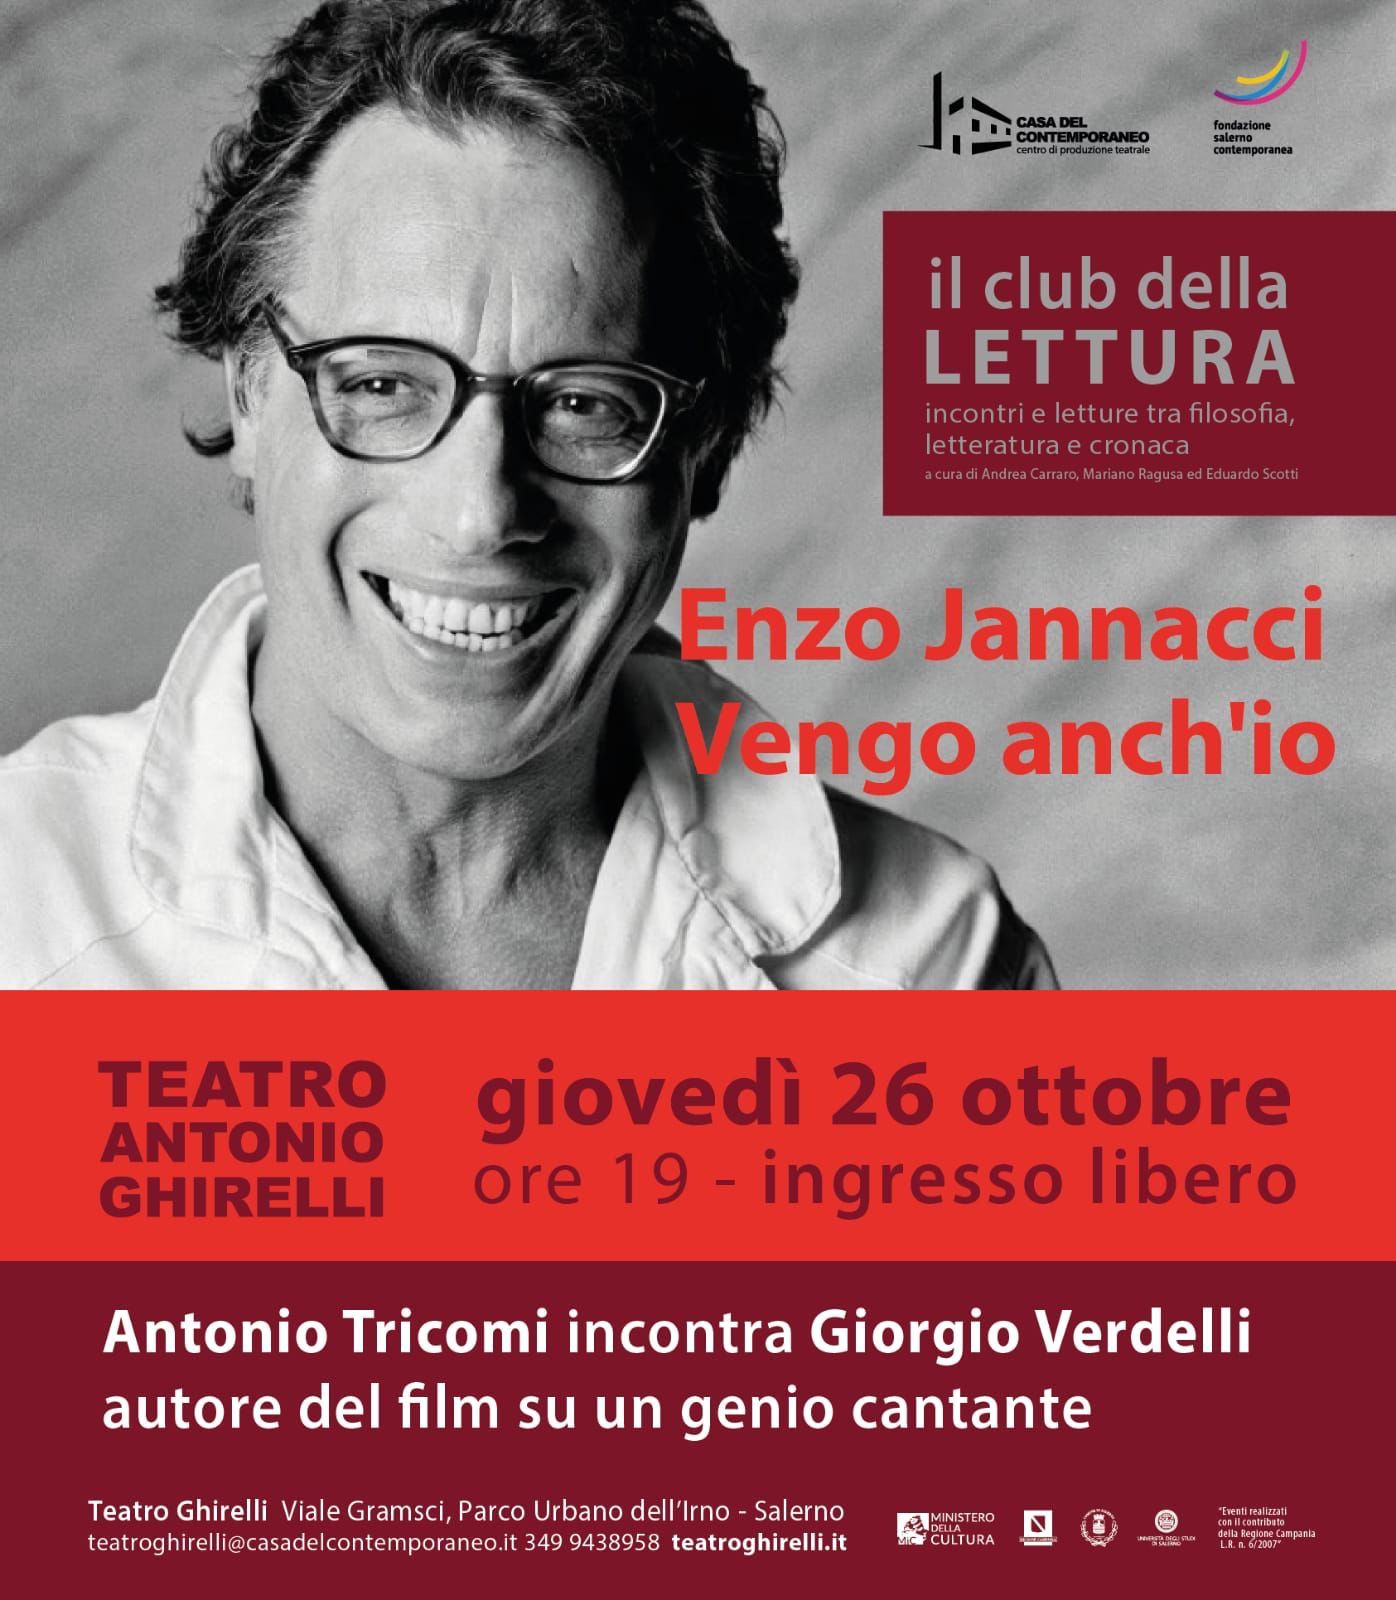 Salerno: a Teatro Ghirelli “Club della Lettura” Antonio Tricomi incontra Giorgio Verdelli